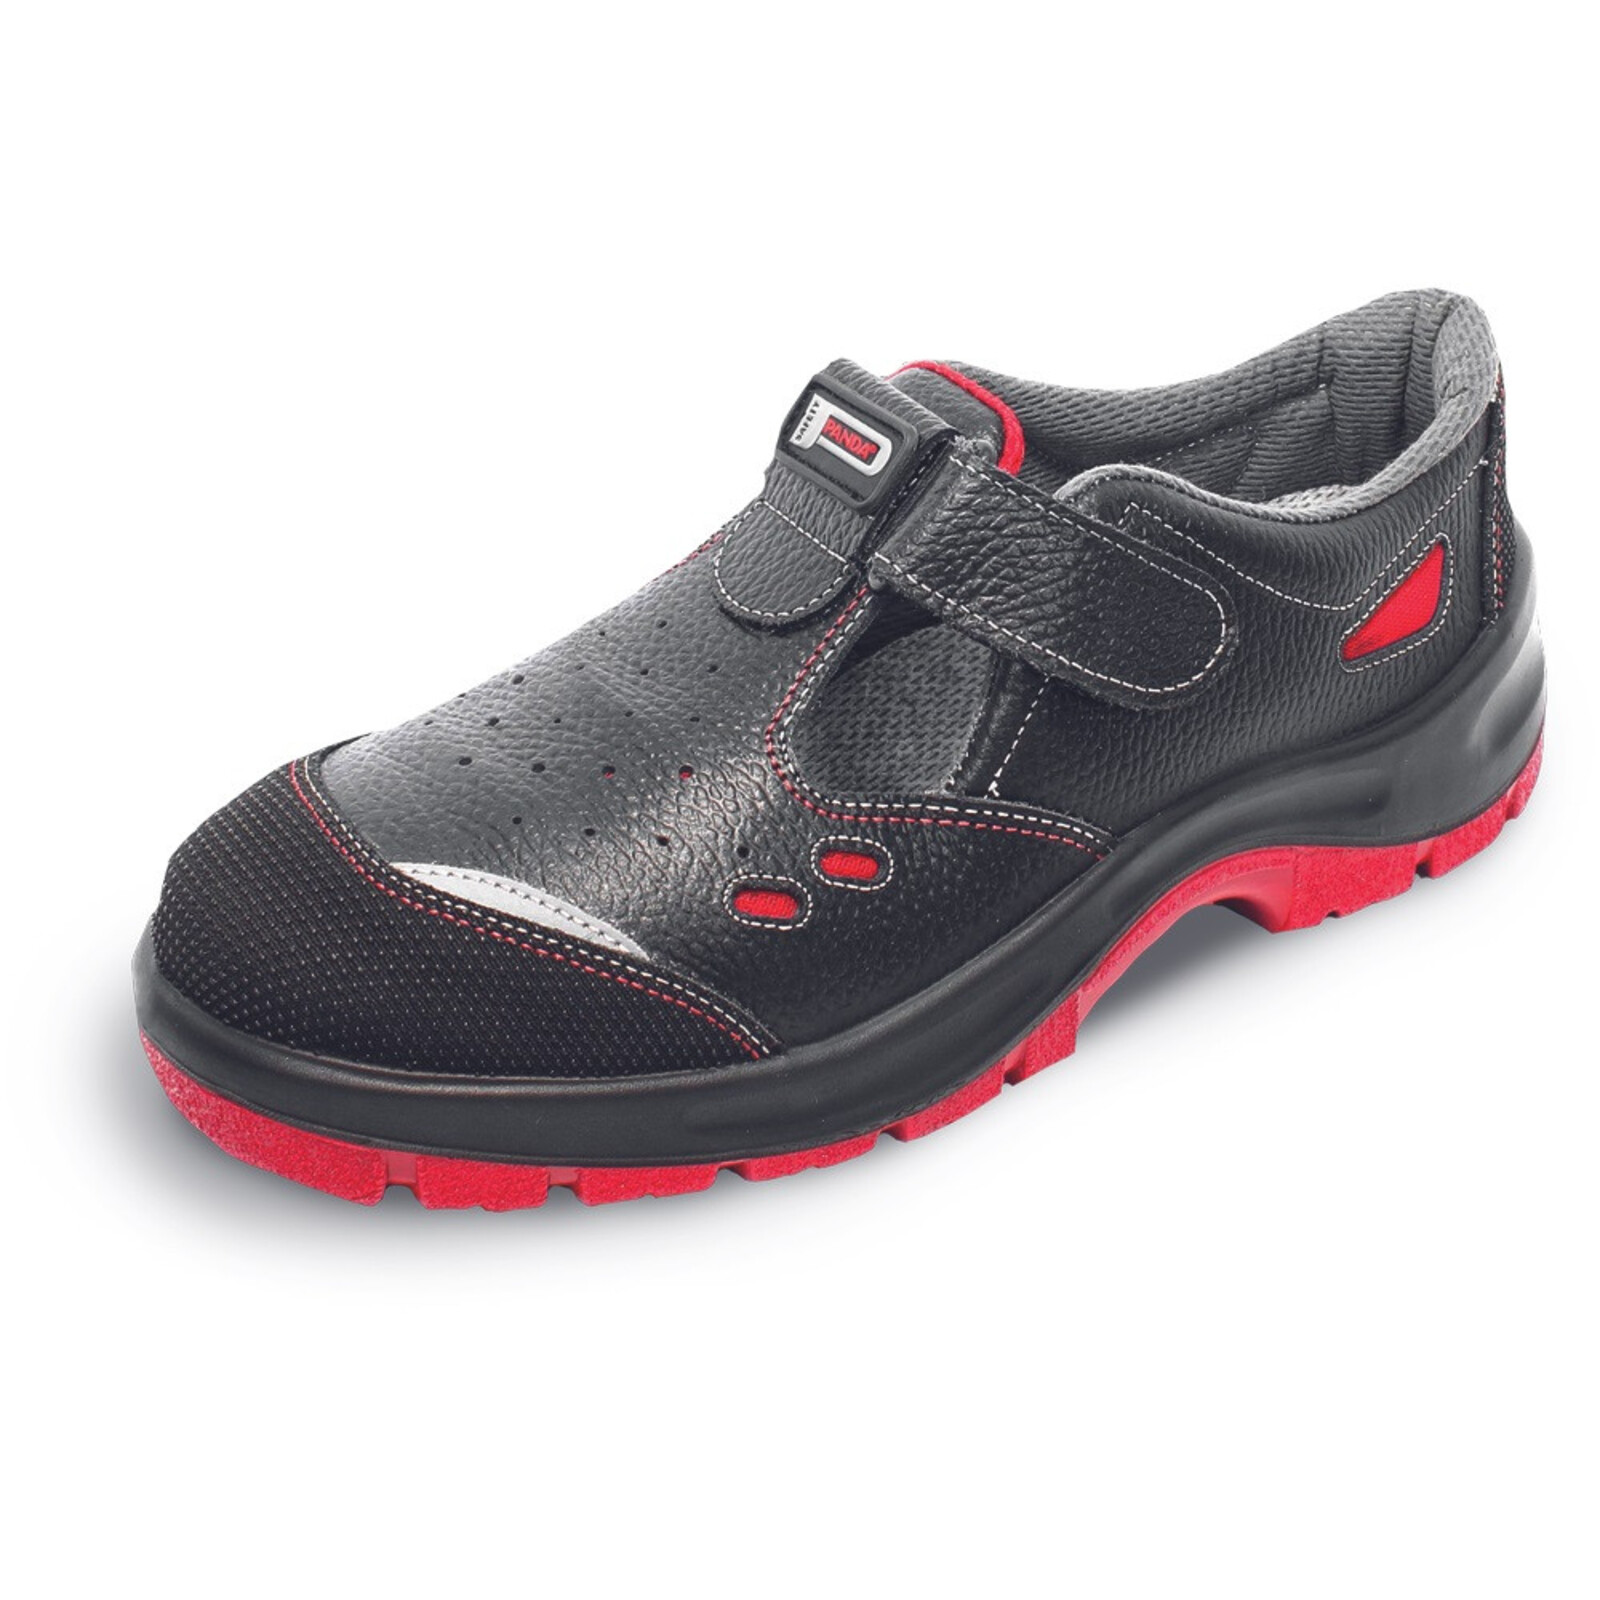 Bezpečnostné sandále Panda Strong Nuovo Topolino MF S1 SRC - veľkosť: 37, farba: čierna/červená